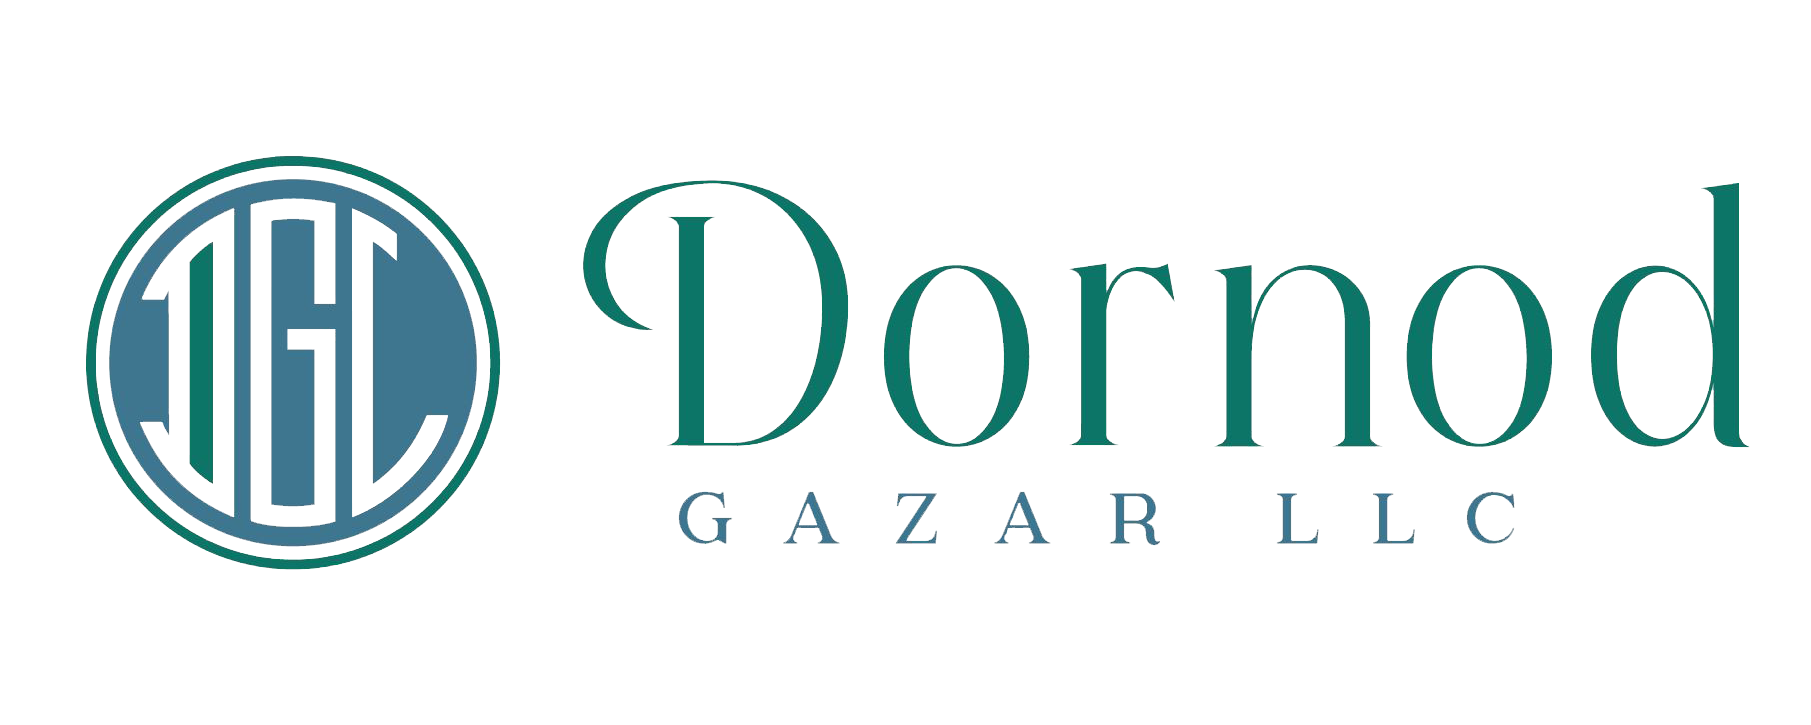 Dornodgazar LLC